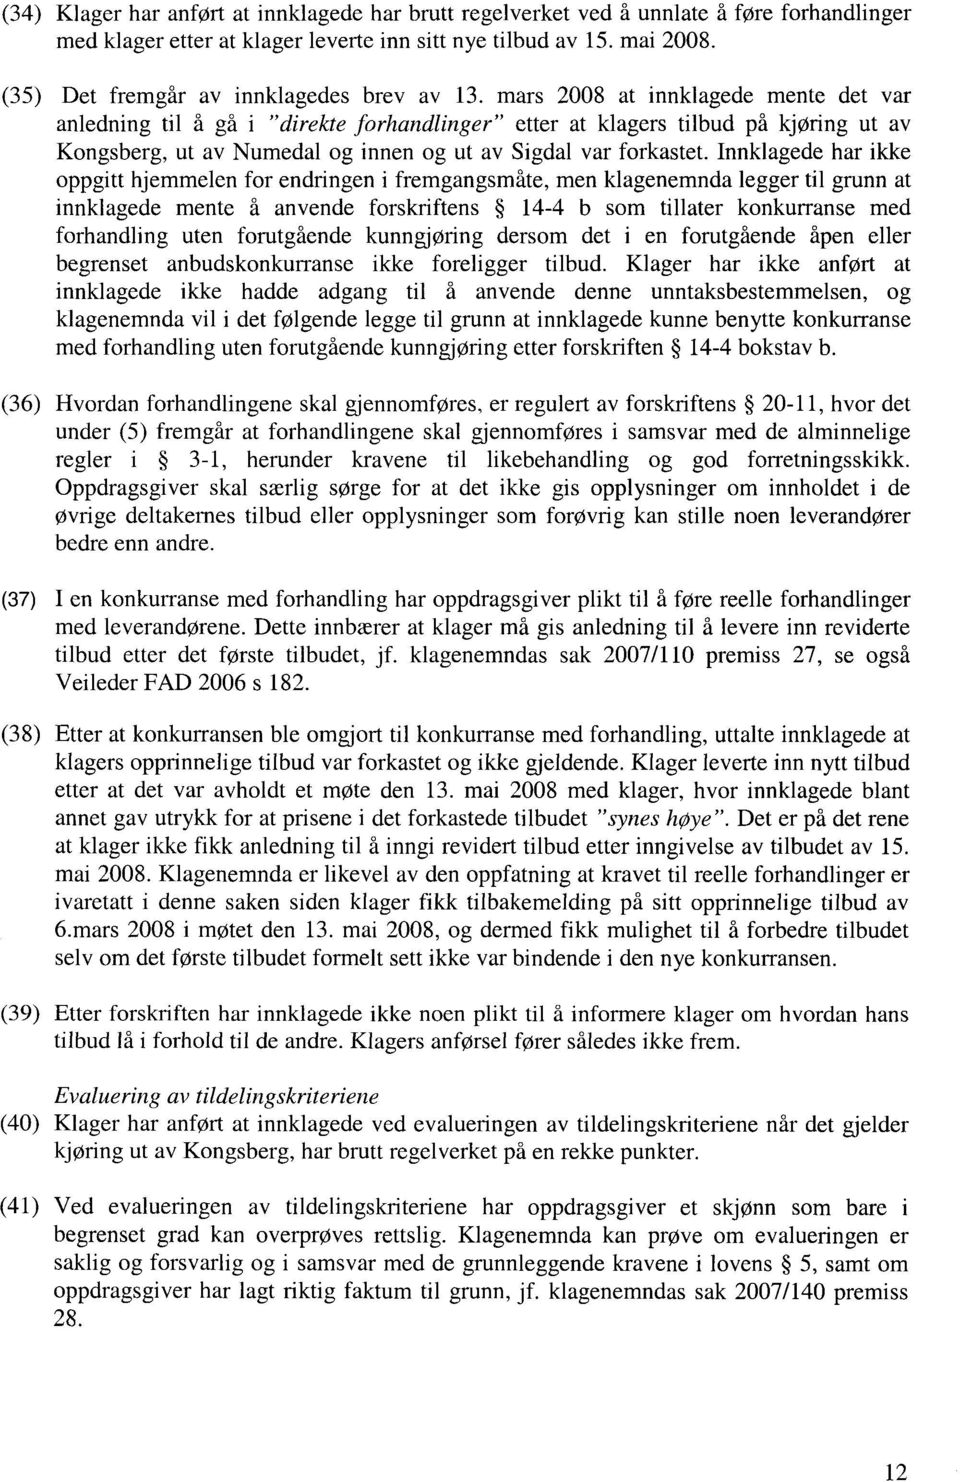 mars 2008 at innklagede mente det var anledning til å gå i "direkte forhandlinger" etter at klagers tilbud på kjøring ut av Kongsberg, ut av Numedal og innen og ut av Sigdal var forkastet.